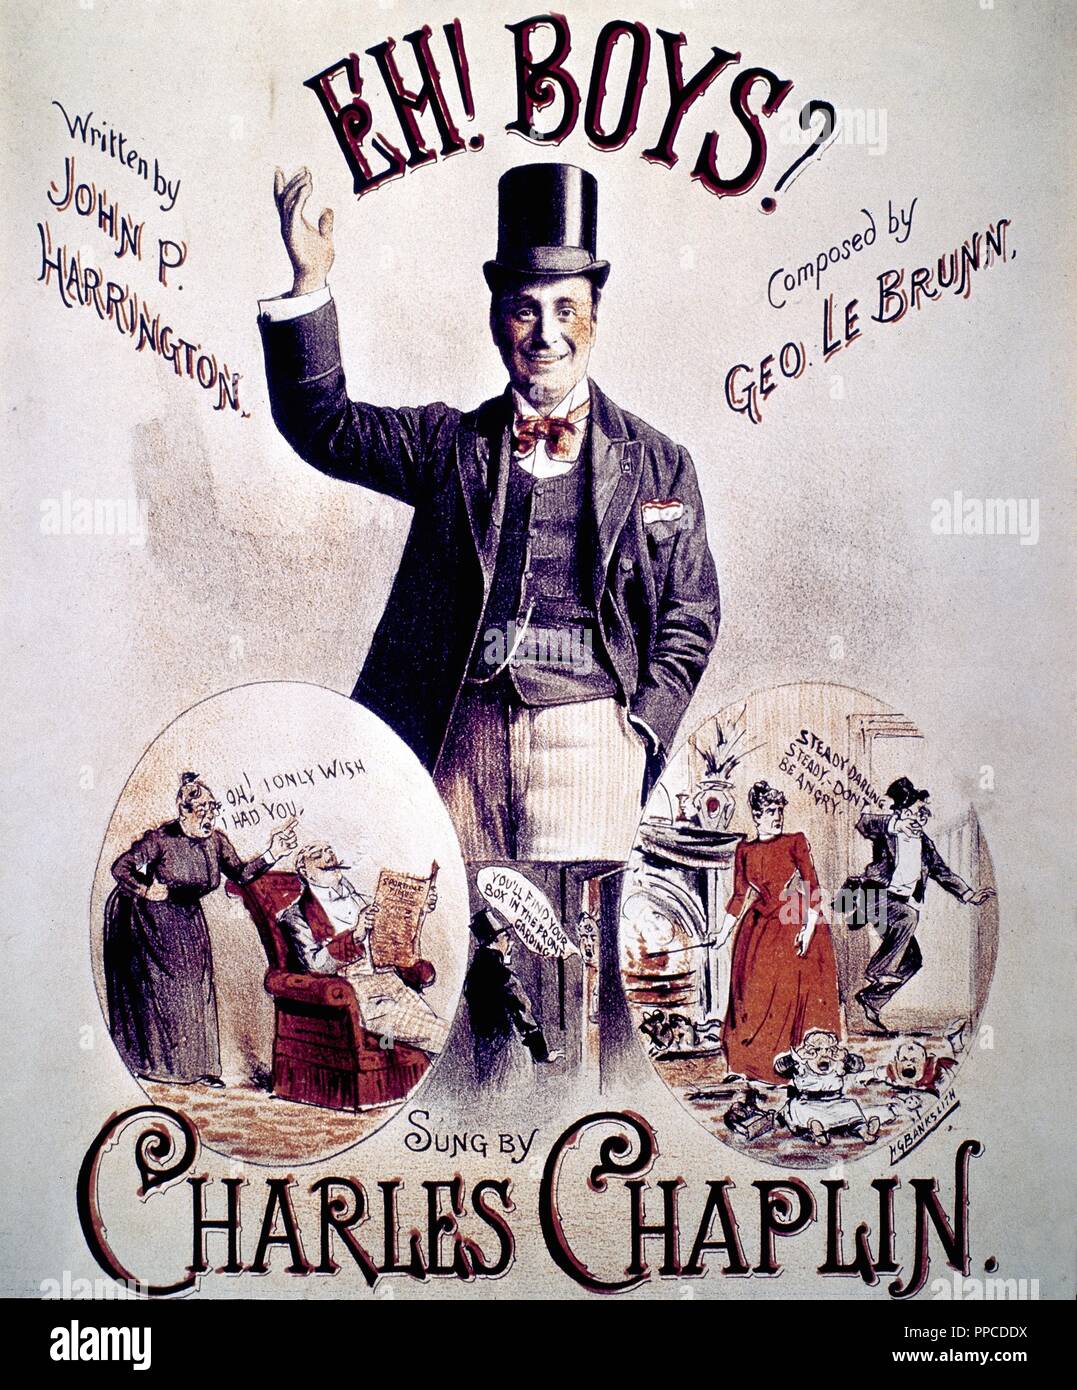 Charles Chaplin como protagonista de la película 'Eh! Boys?'; cartel. Museum: COLECCION PARTICULAR/. Stock Photo